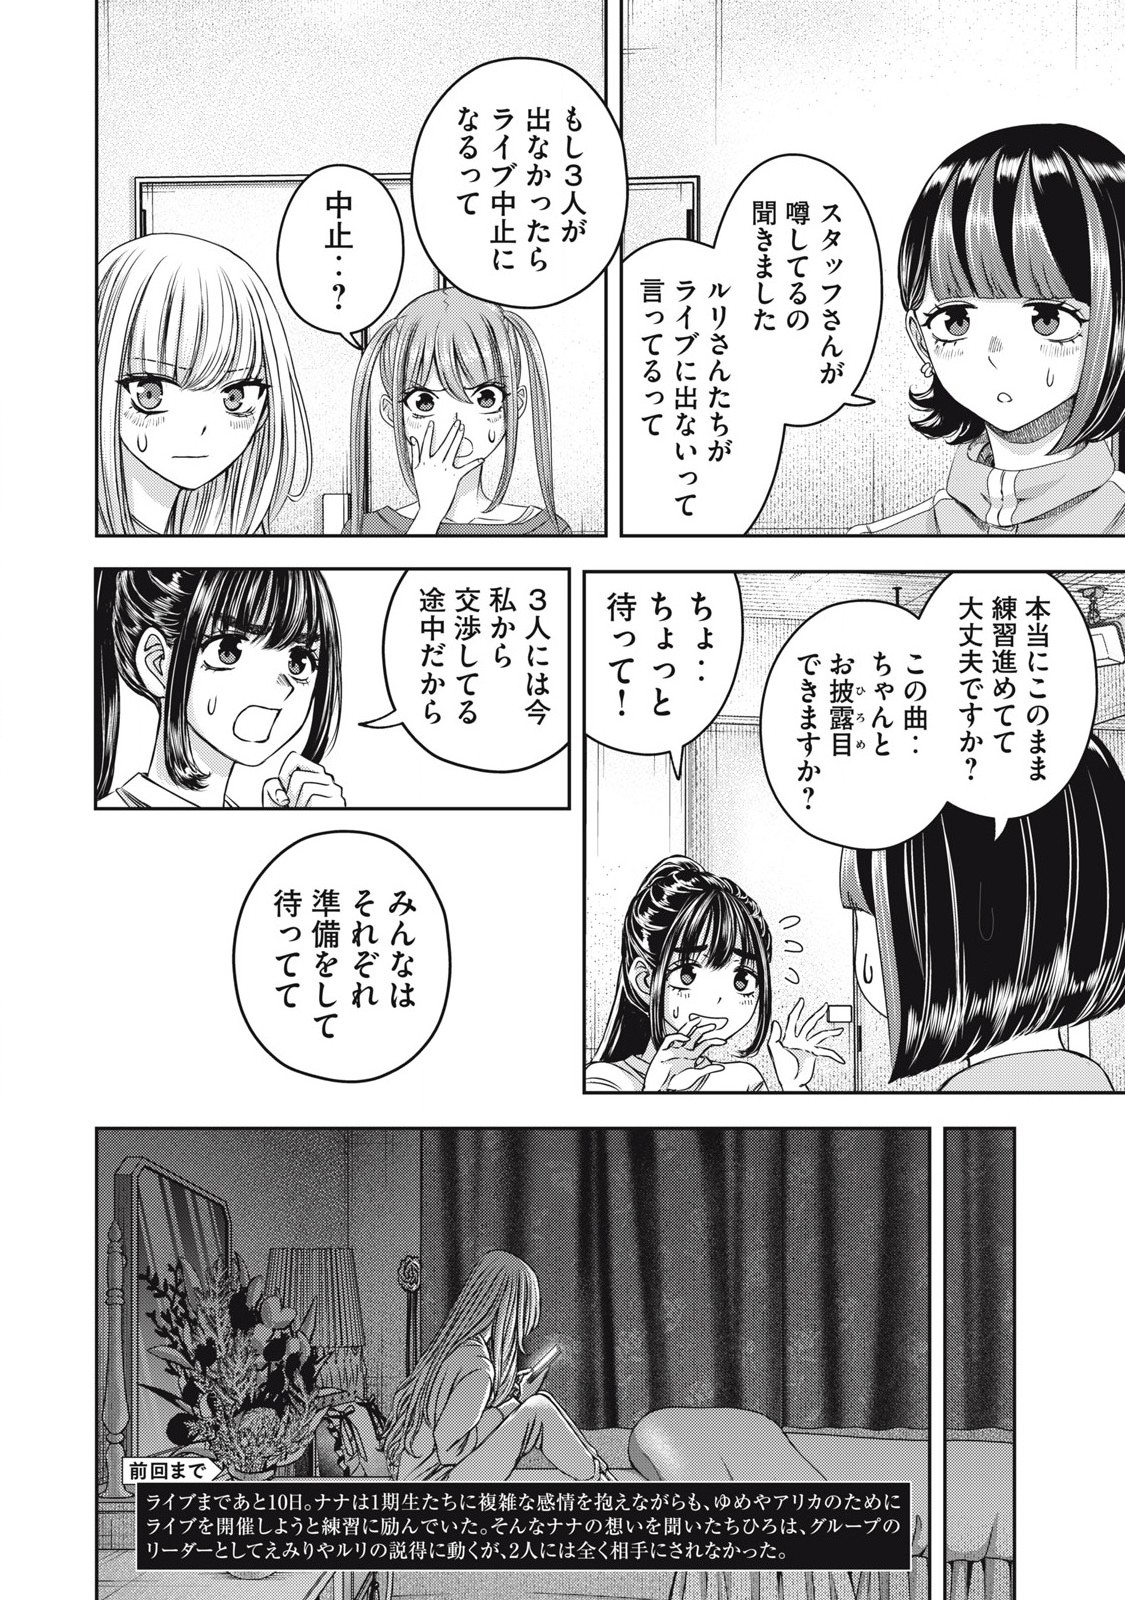 Watashi no Arika - Chapter 57 - Page 2